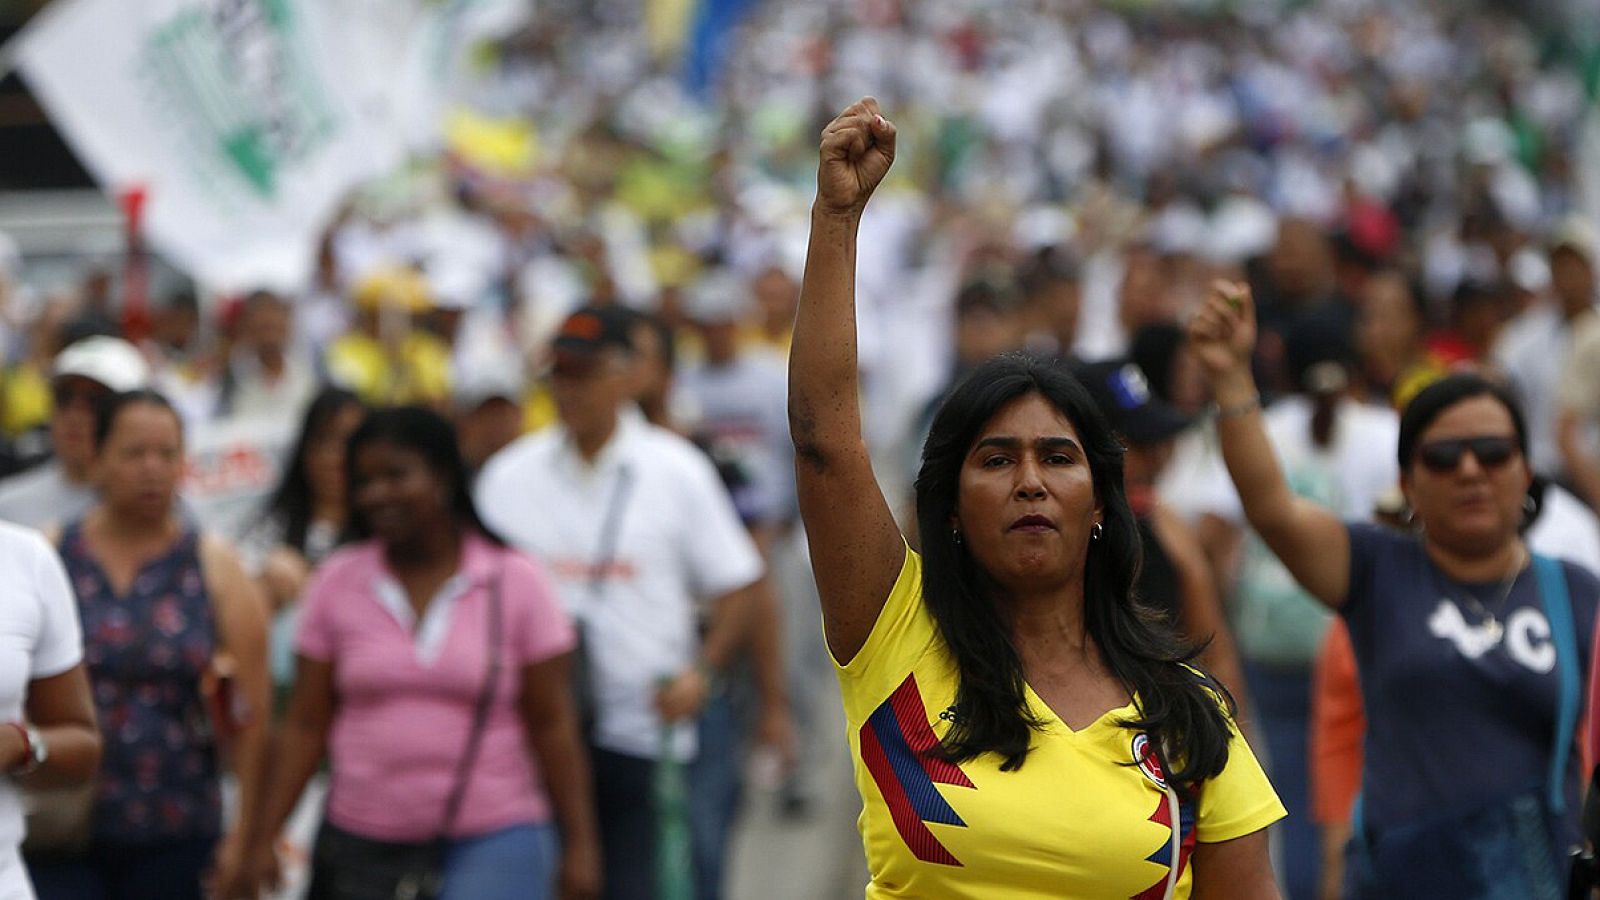 Una mujer participa en una marcha durante una jornada nacional de movilizaciones en contra del presidente de Colombia Iván Duque el 21 de febrero en Cali (Colombia). EFE/Ernesto Guzman Jr